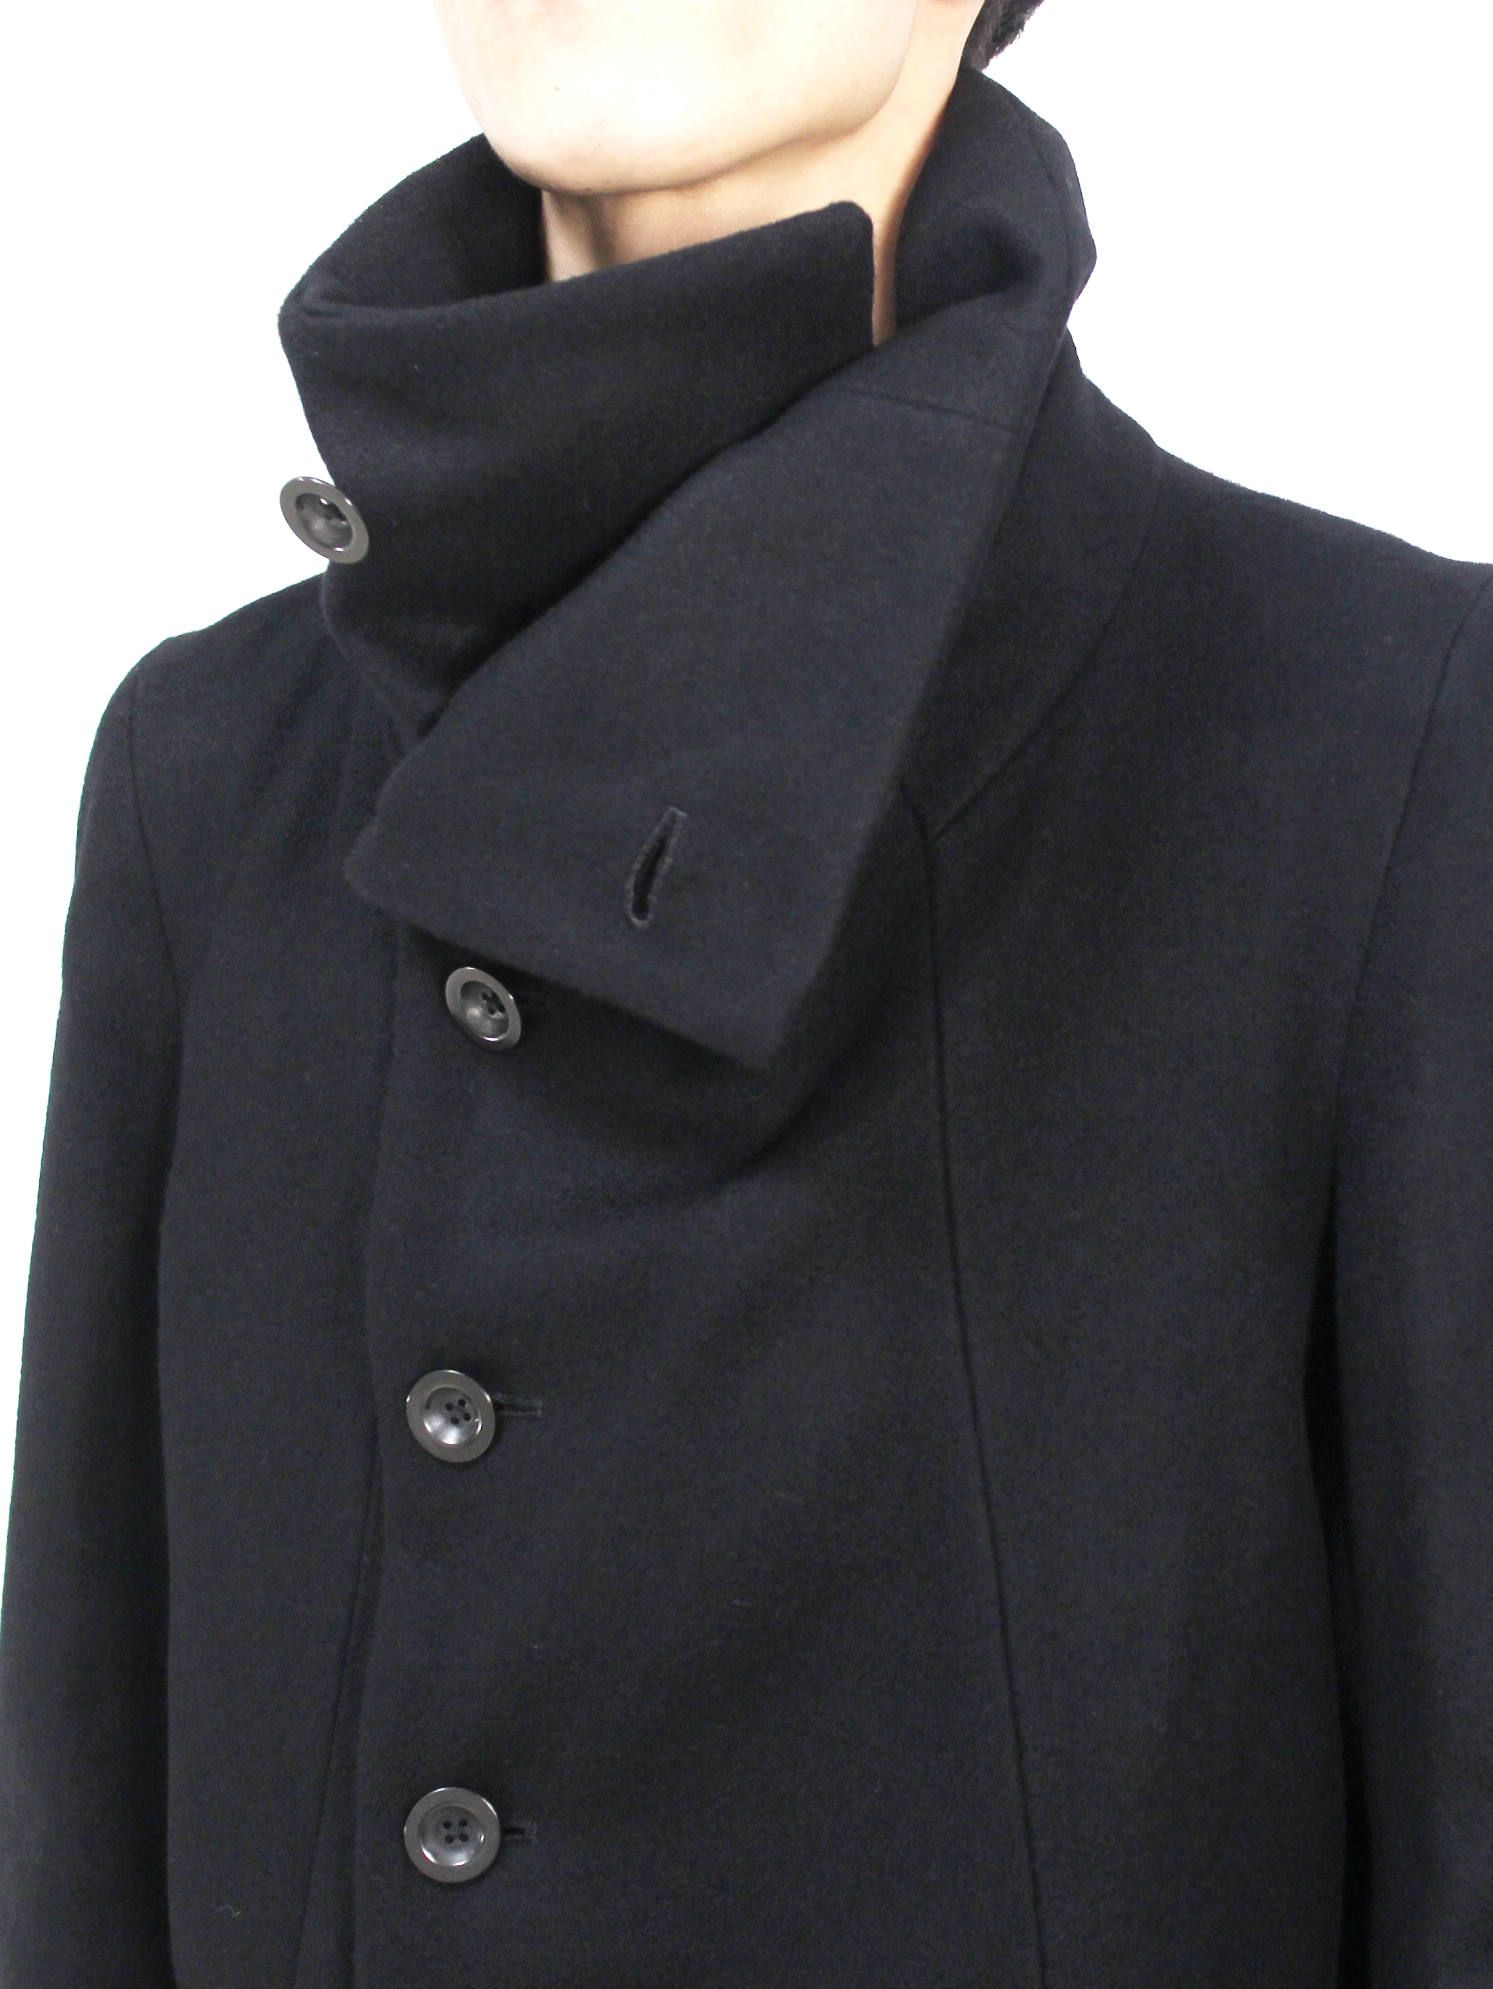 ハイネックメルトンコート - Melton High Neck Coat Short - Black - 1 (S)